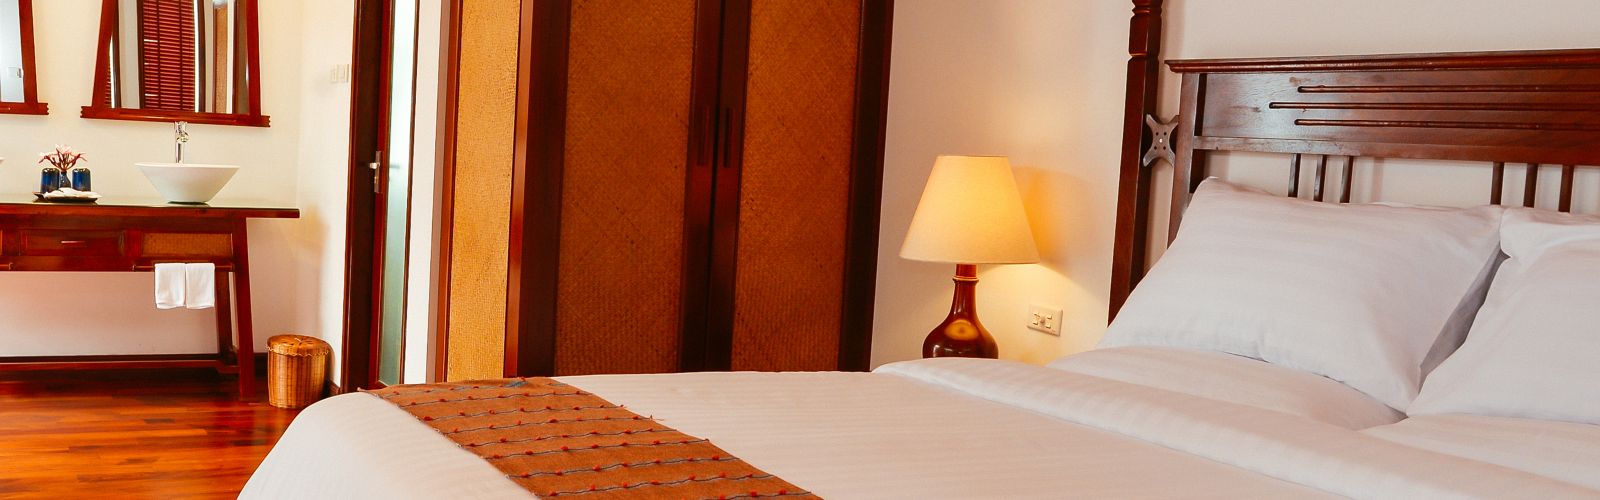 Hotels in Luang Prabang